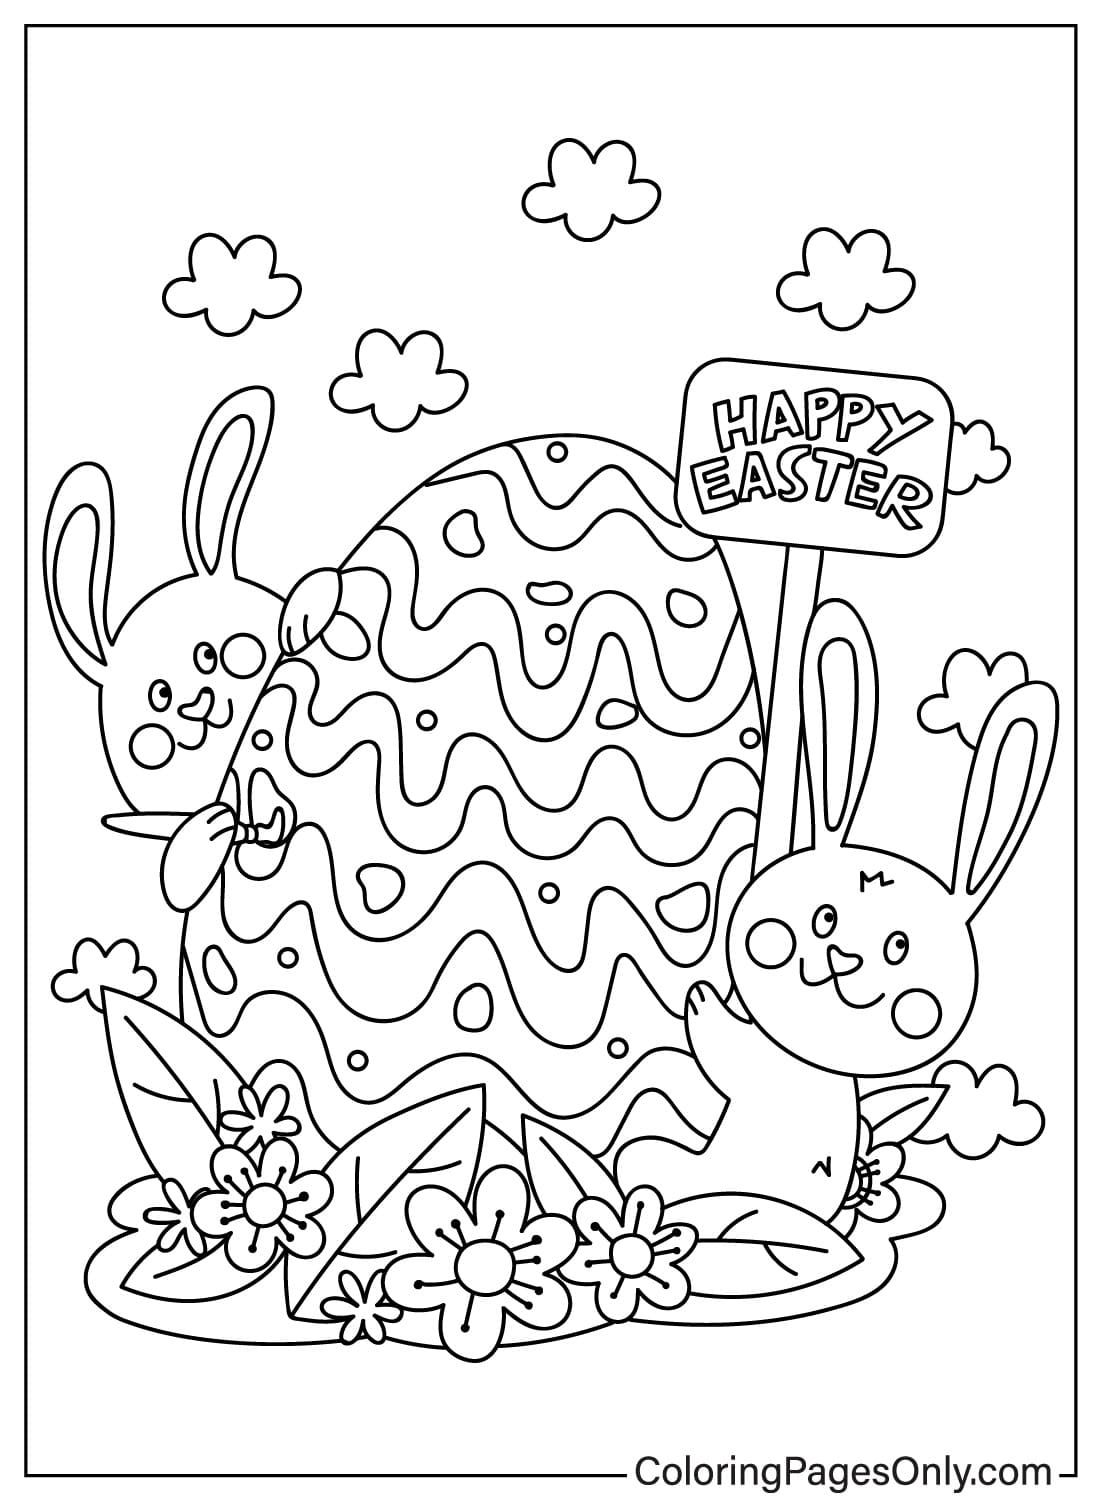 Disegno del coniglietto pasquale da colorare dal coniglietto pasquale